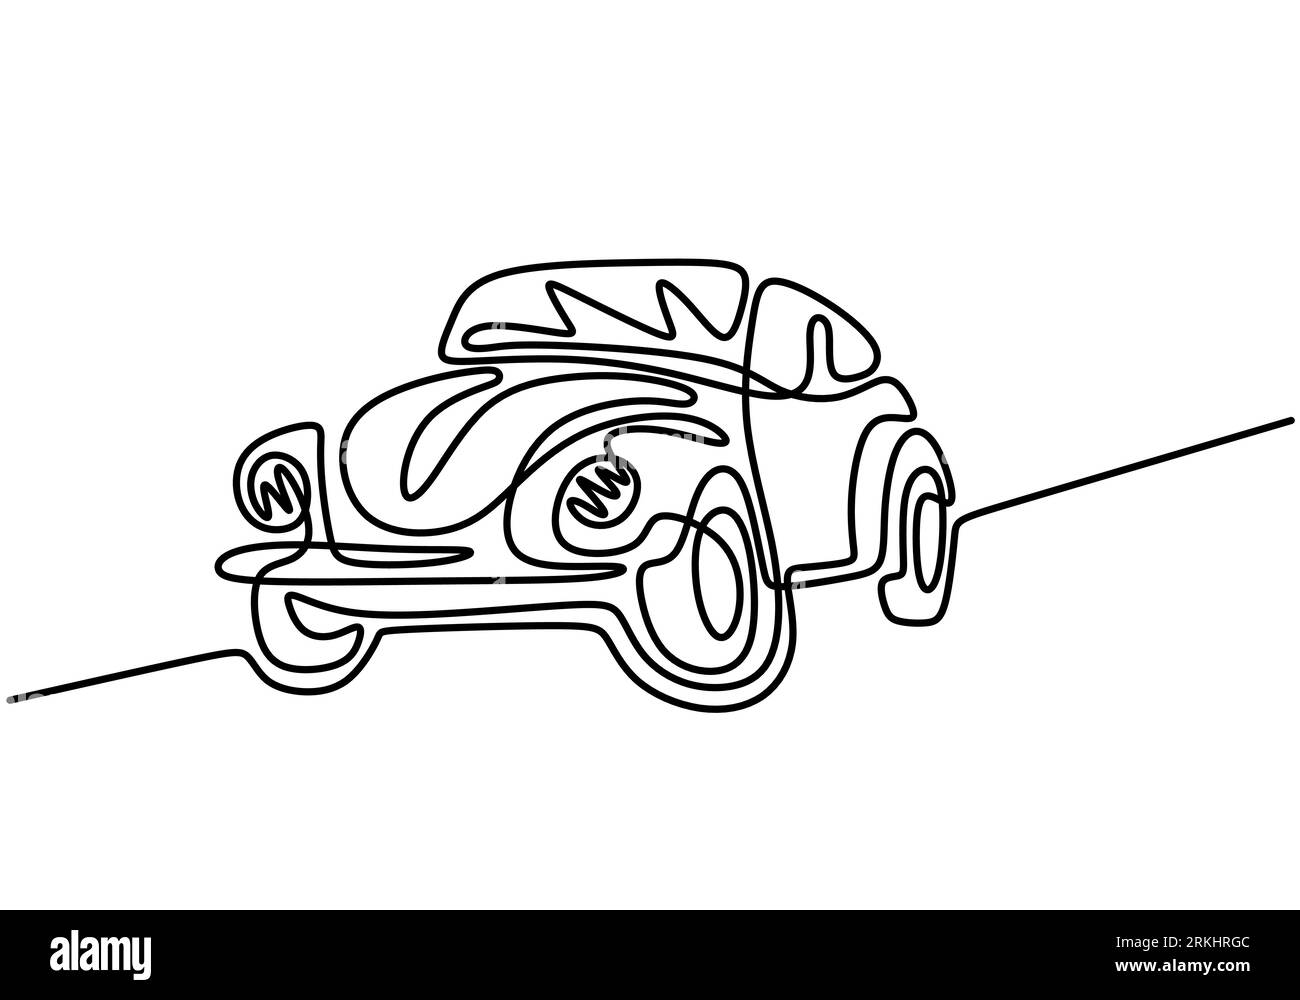 Retro-Auto durchgehende einzeilige Zeichnung isoliert auf weißem Hintergrund. Alter Oldtimer Volkswagen Beetle minimalistischer handgezeichneter linearer Entwurf. Vektorklas Stock Vektor